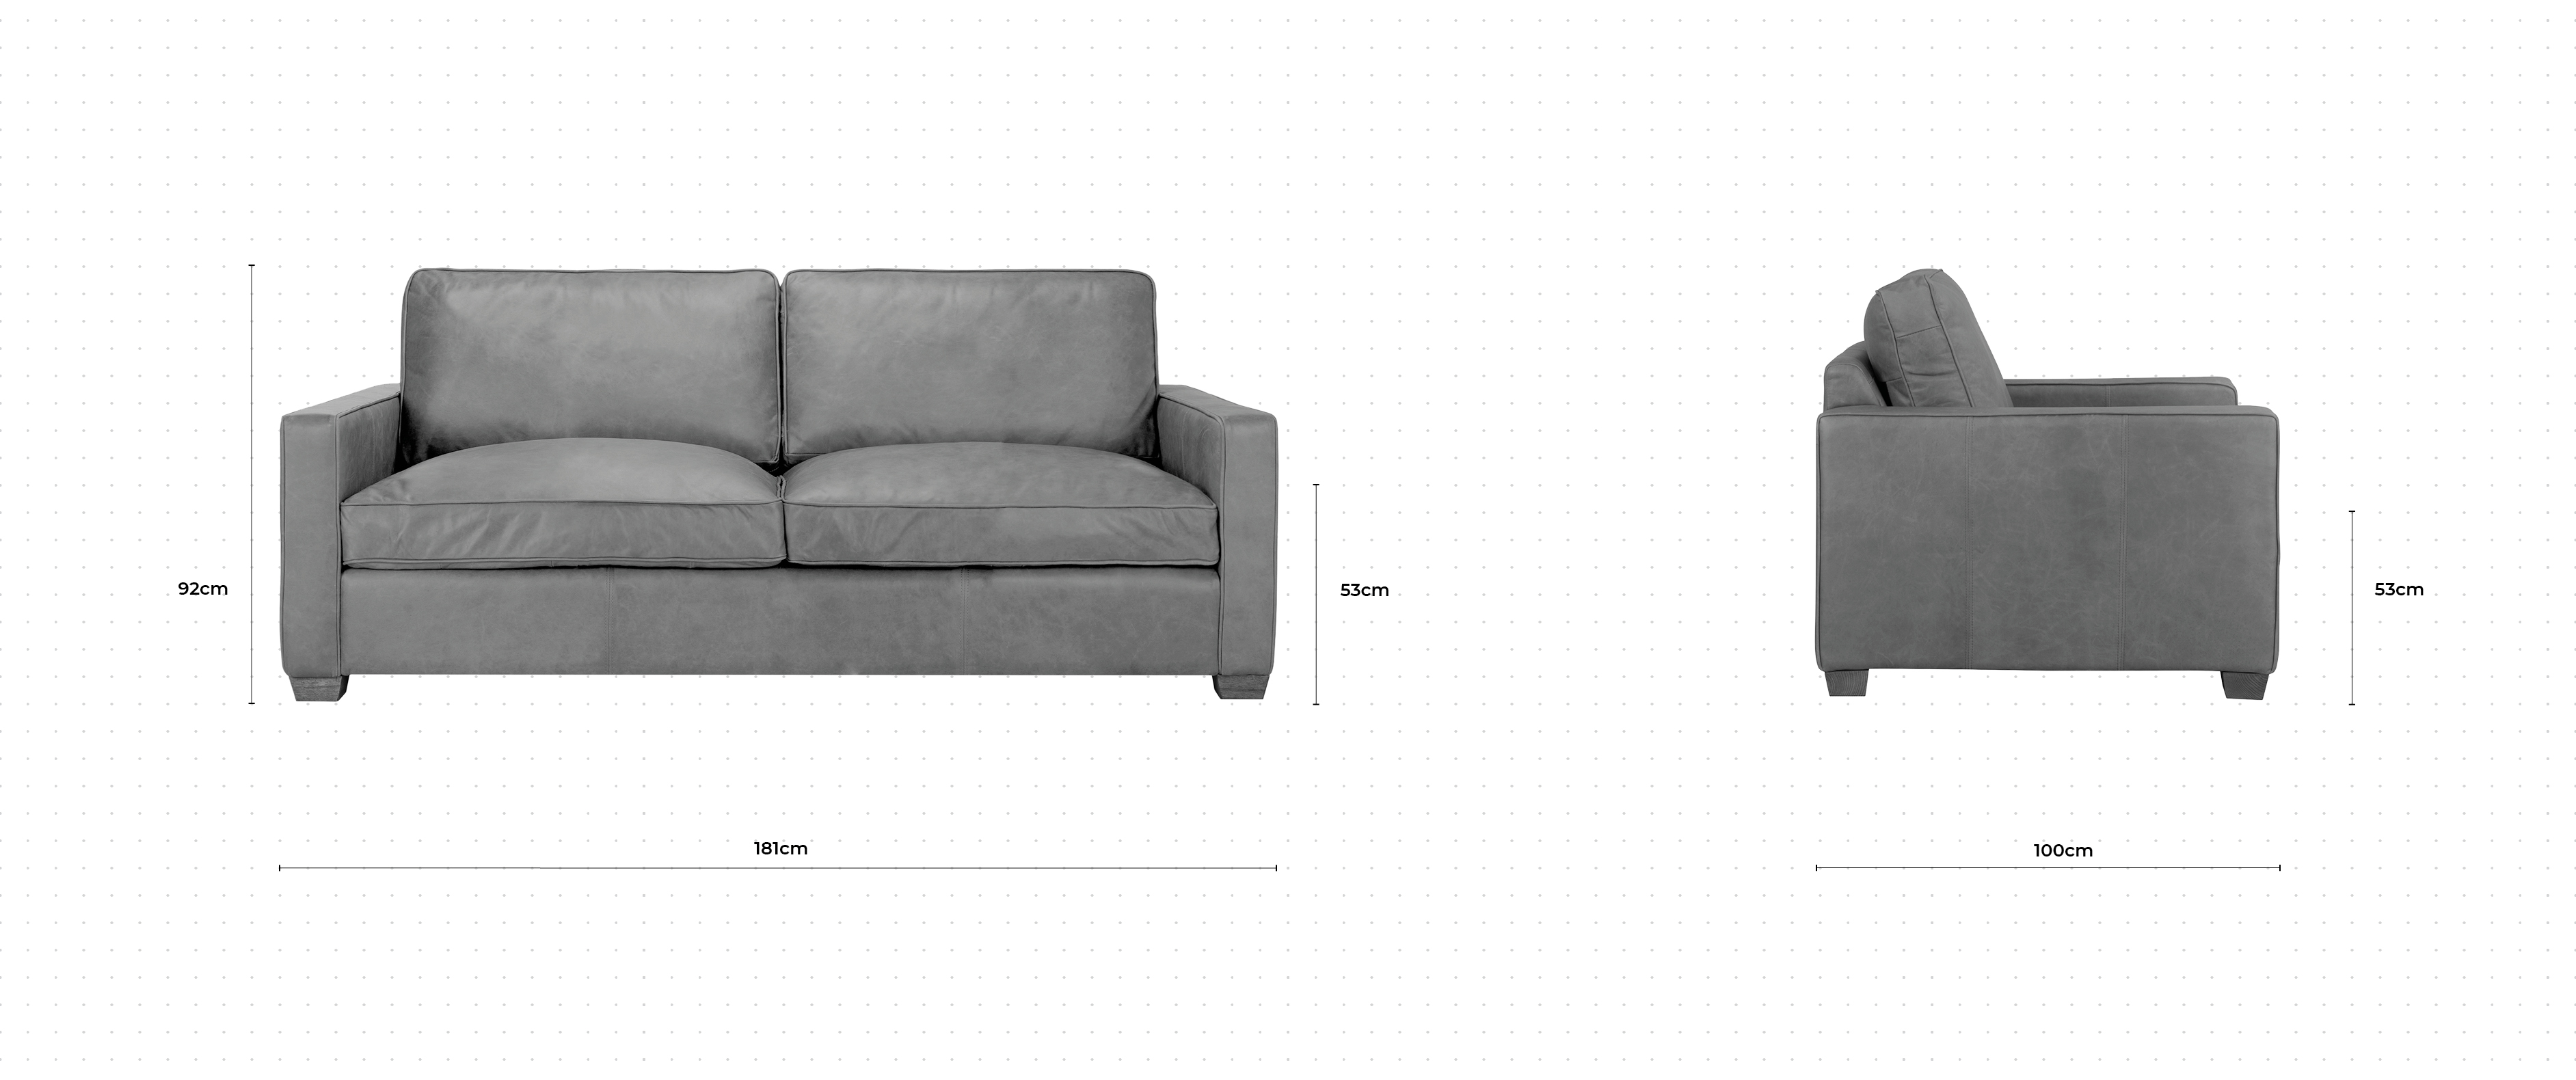 Blake 2 Seater Sofa dimensions